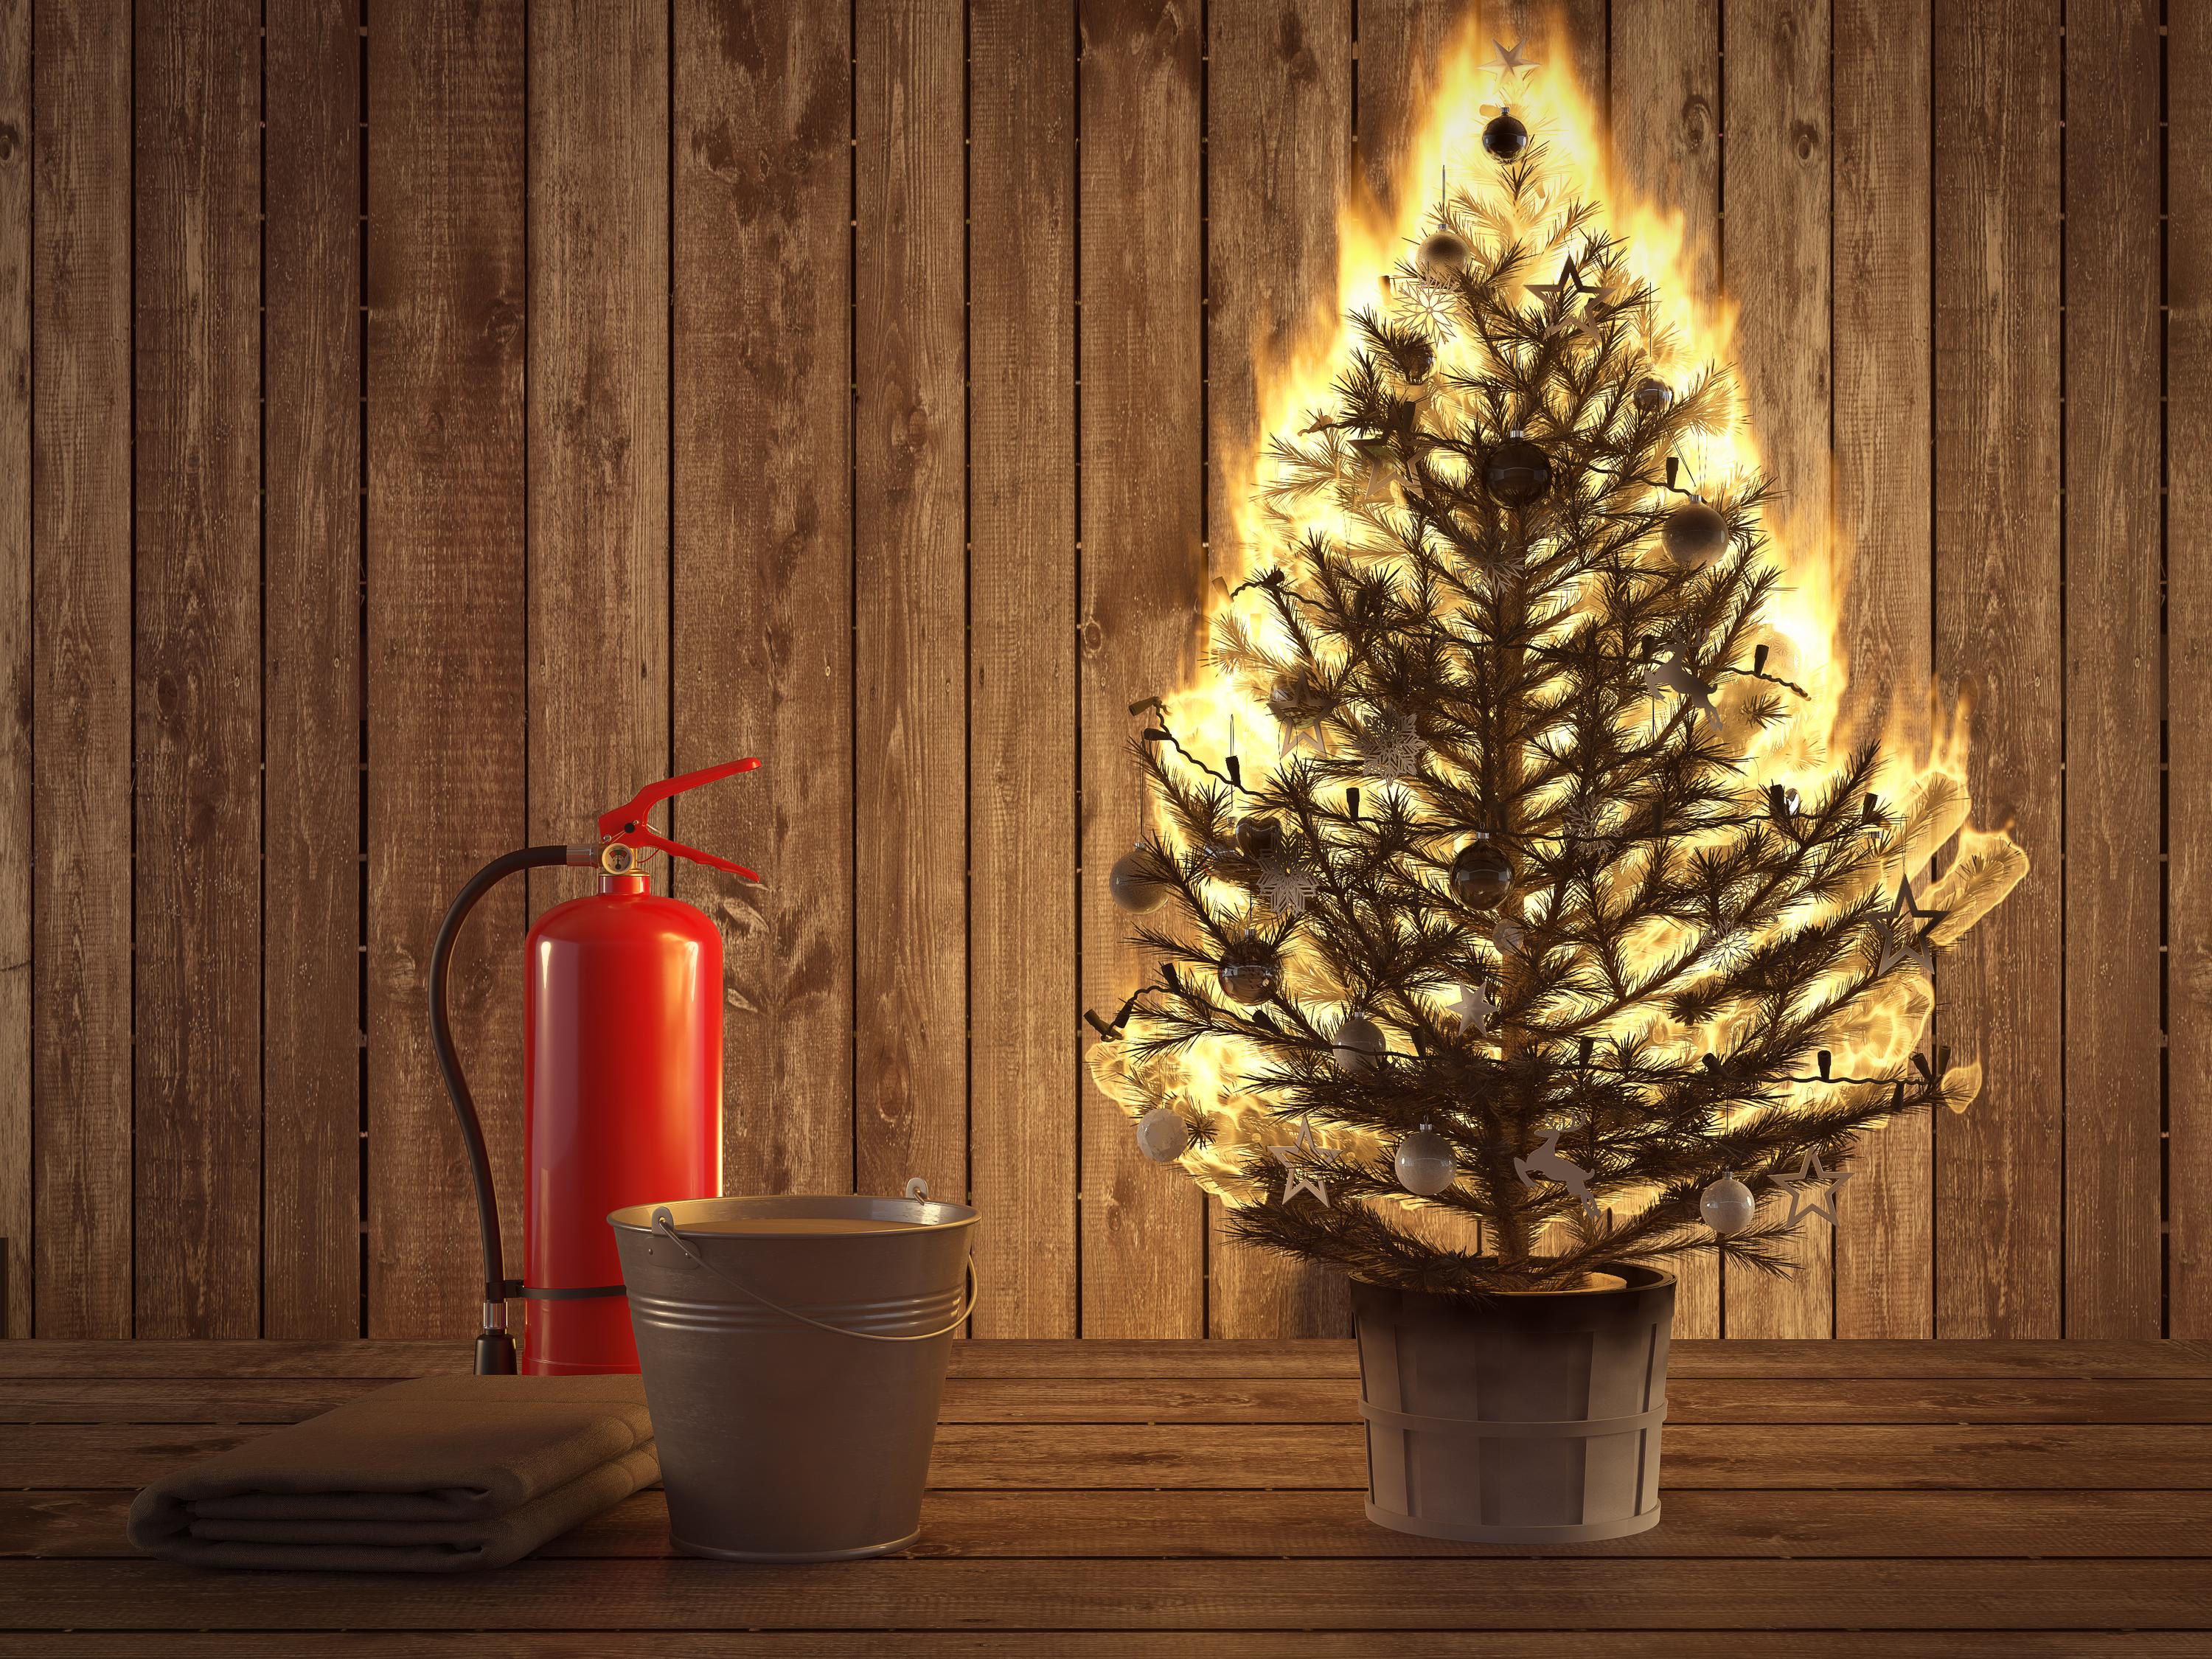 Zahlt die Versicherung, wenn der Weihnachtsbaum brennt?